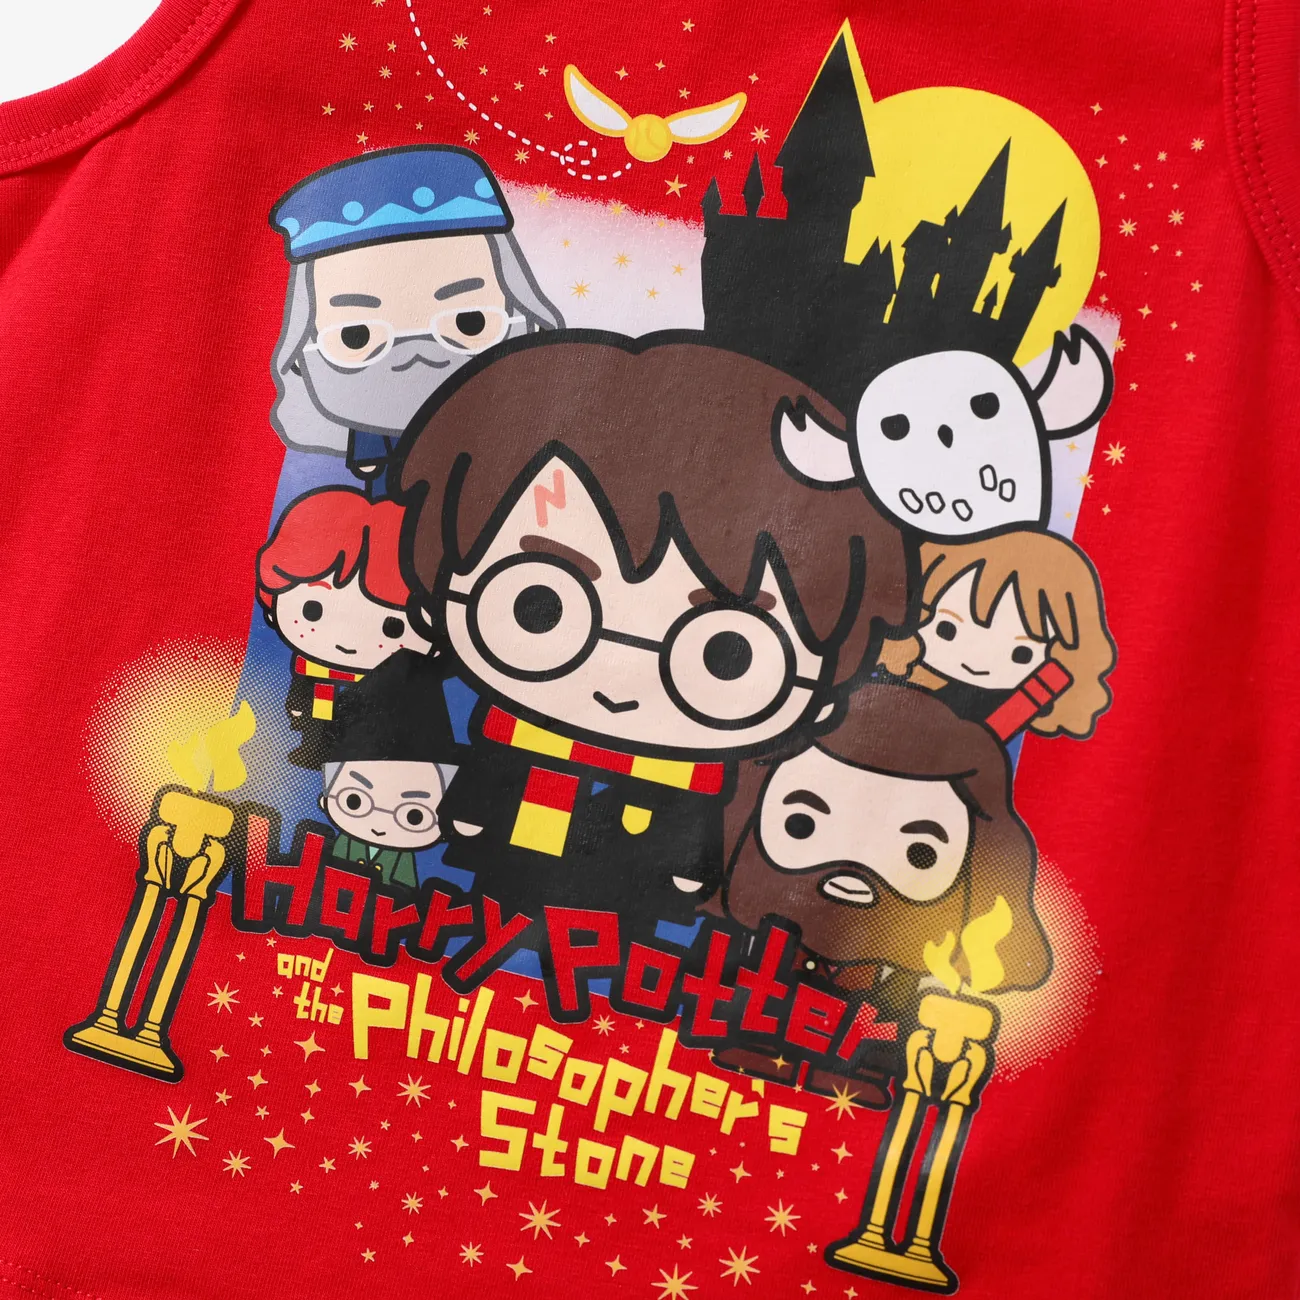 Harry Potter Kleinkinder Jungen Kindlich T-Shirt-Sets rot big image 1